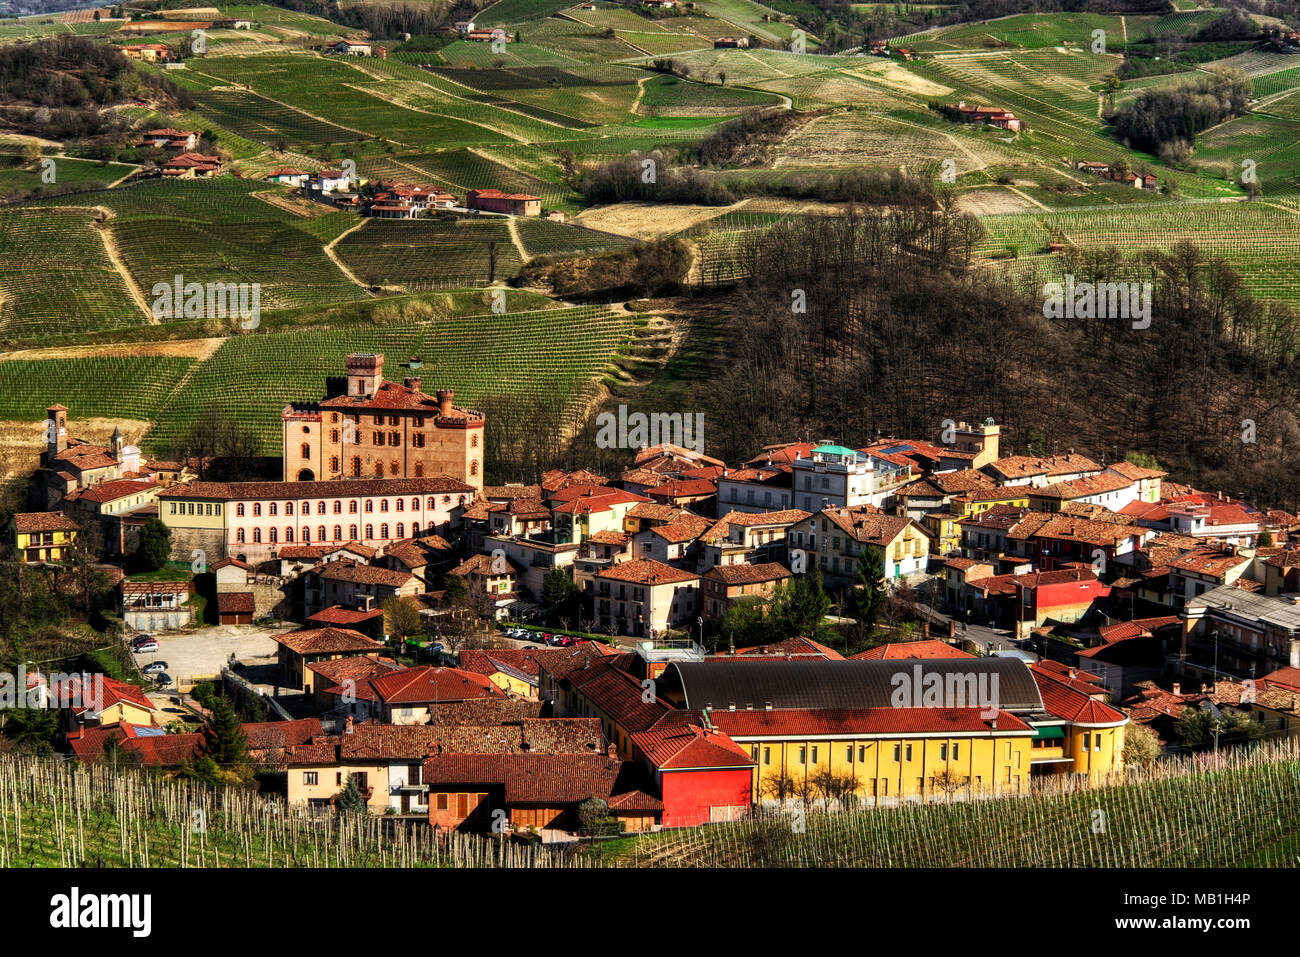 La città di Barolo con il castello Falletti, tra i vigneti, nel centro della zona dell'omonimo vino. Foto Stock